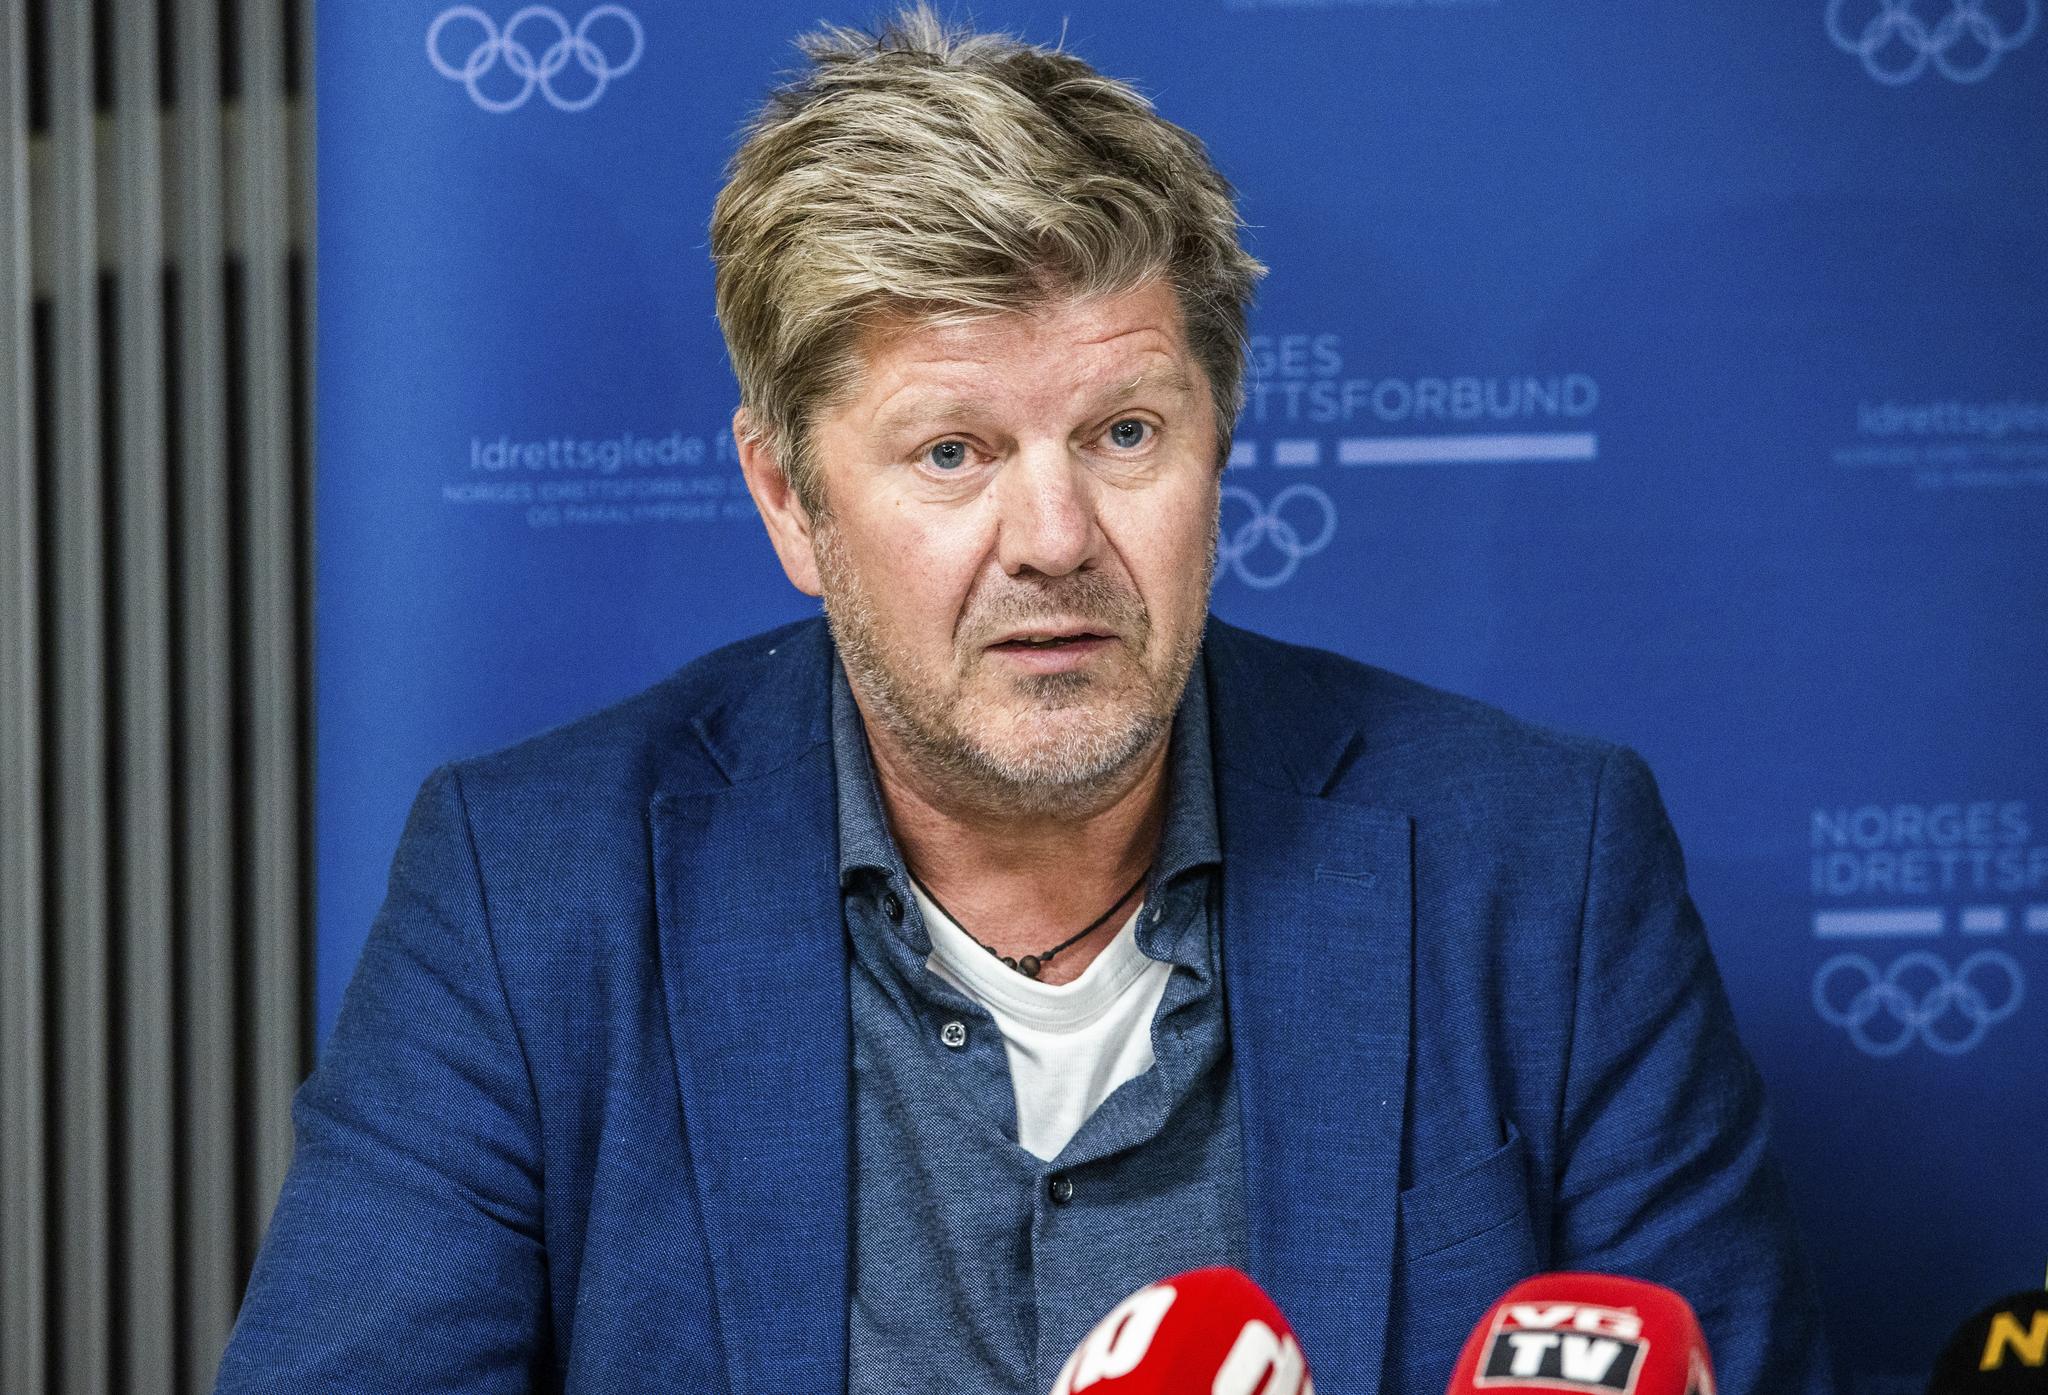 GJØR DET DE KAN: Generalsekretær i Norges Ishockeyforbund, Ottar Eide, sier de forsøker å legge til rette for en trygg avslutning på sesongen.